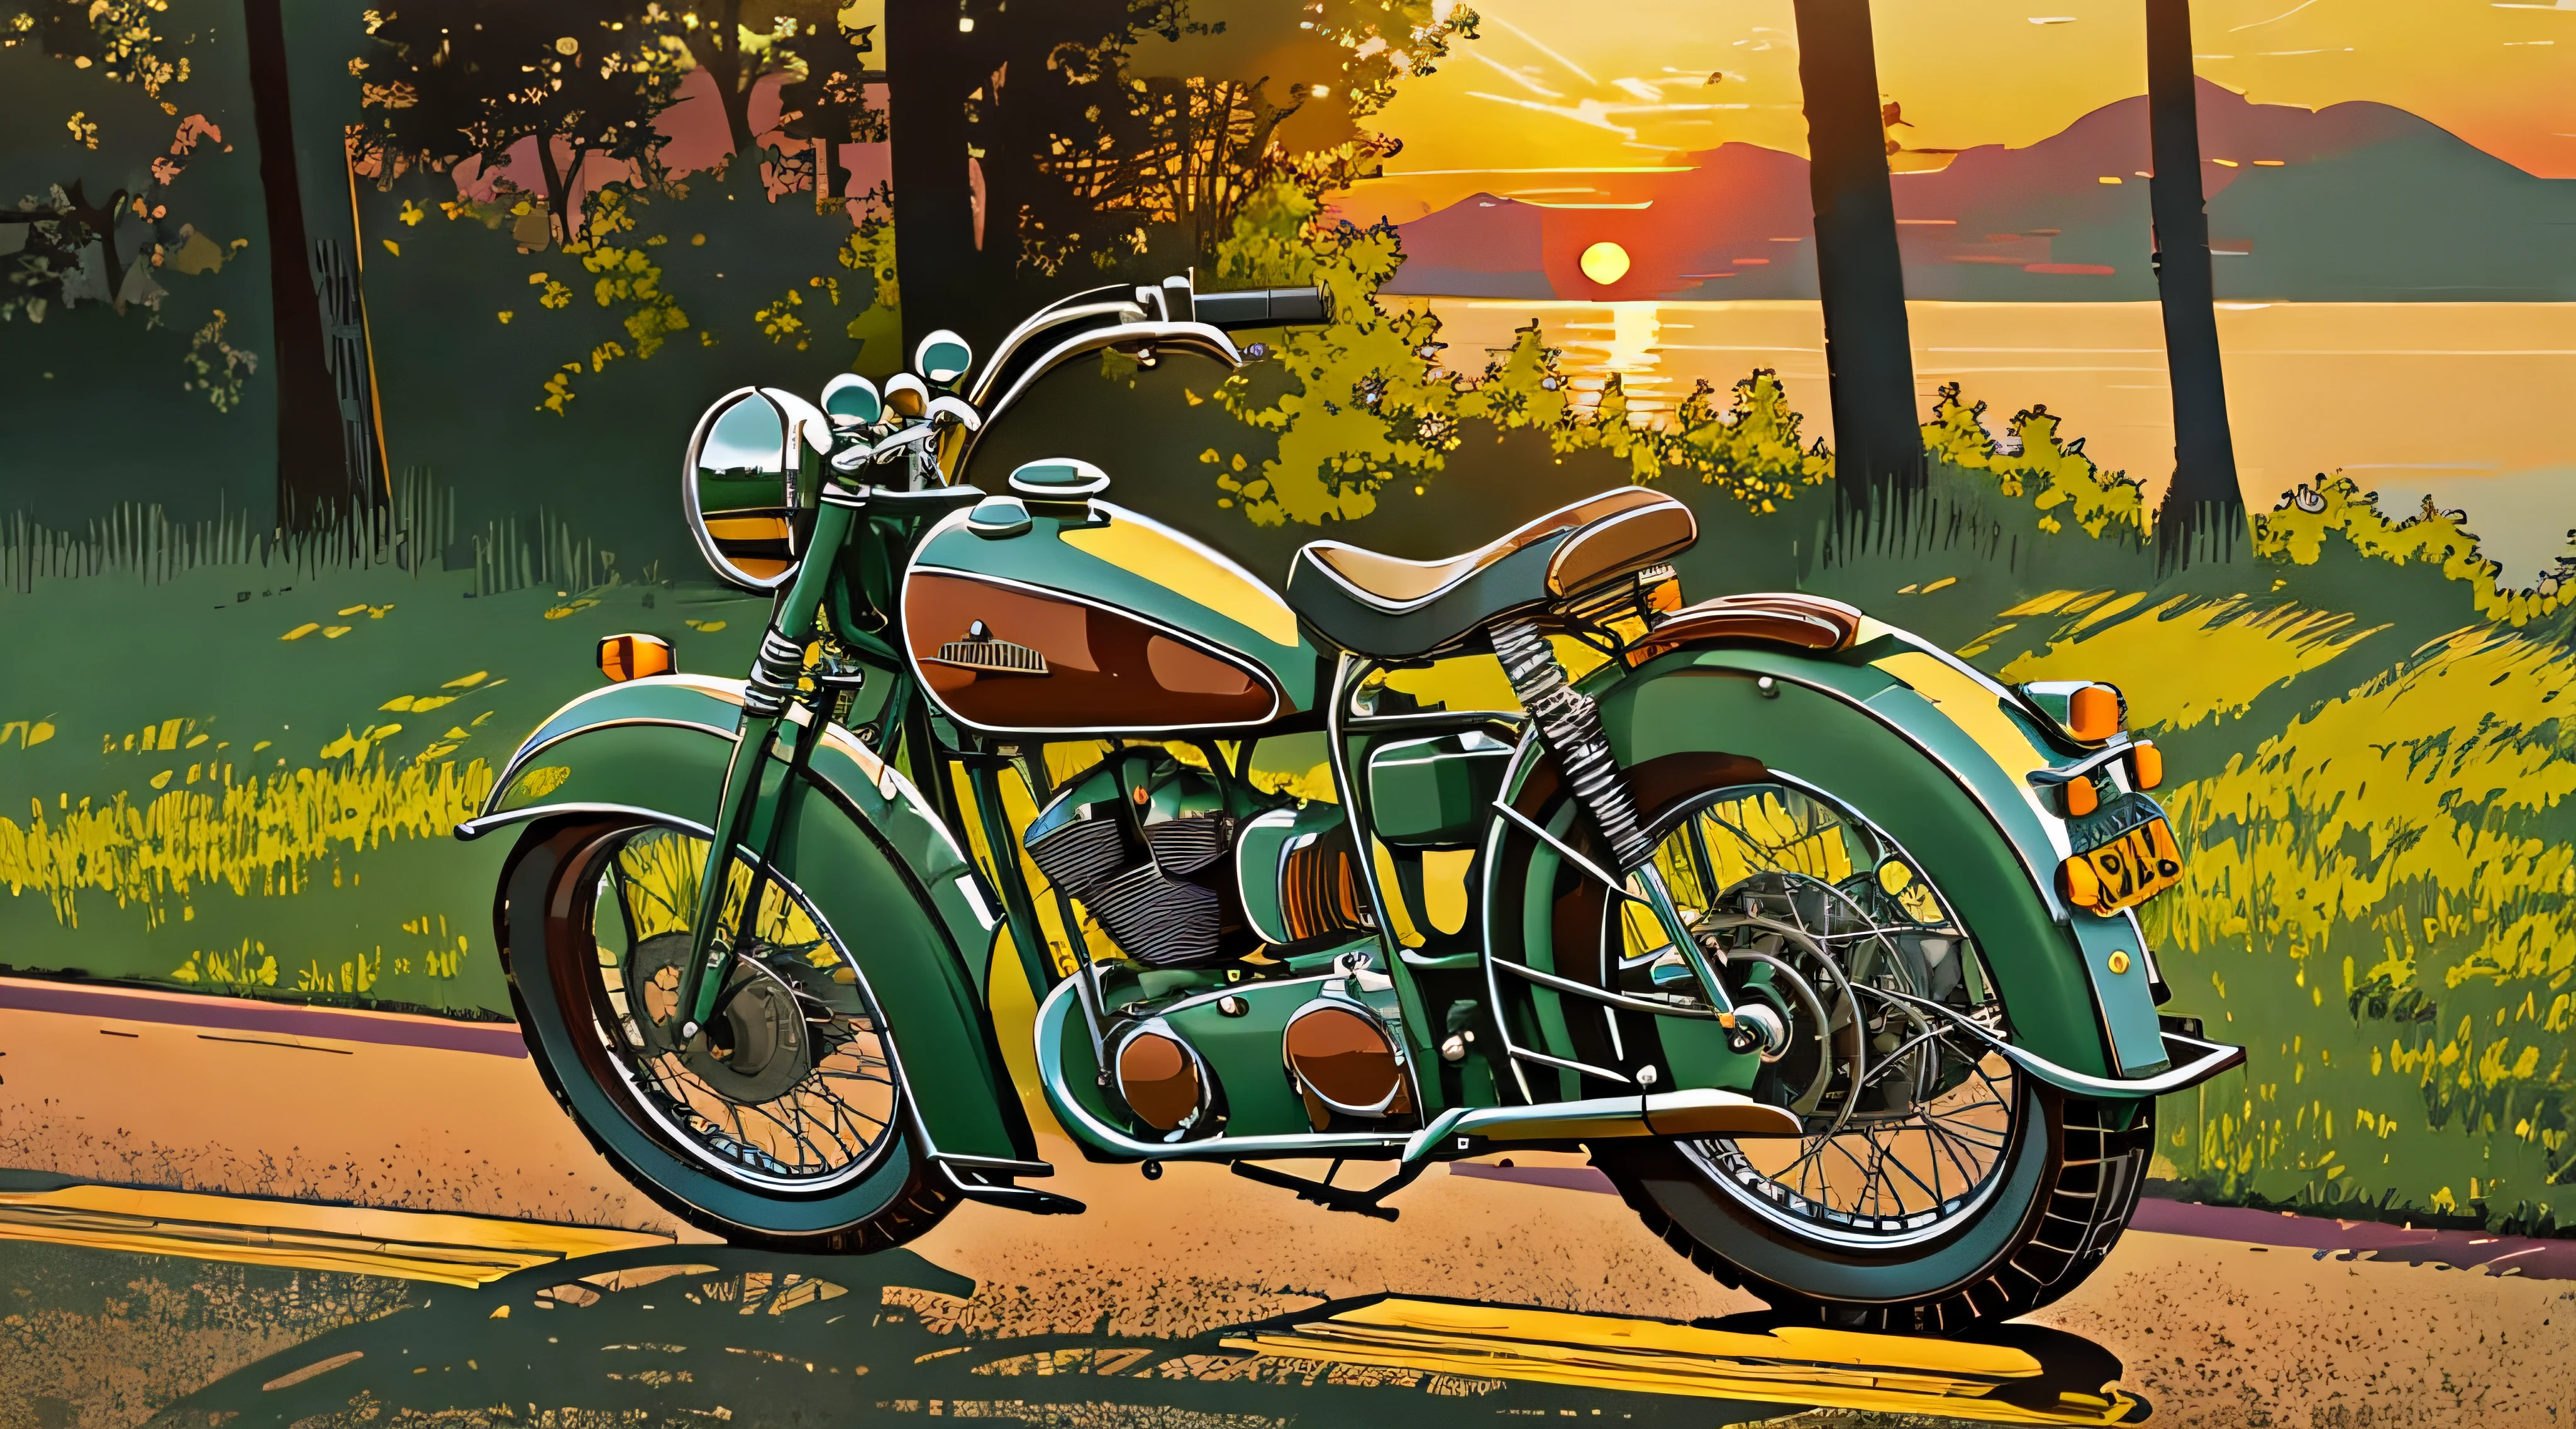 艺术风格色调, 调性艺术, 日落, 超现实的老式摩托车 40 年代